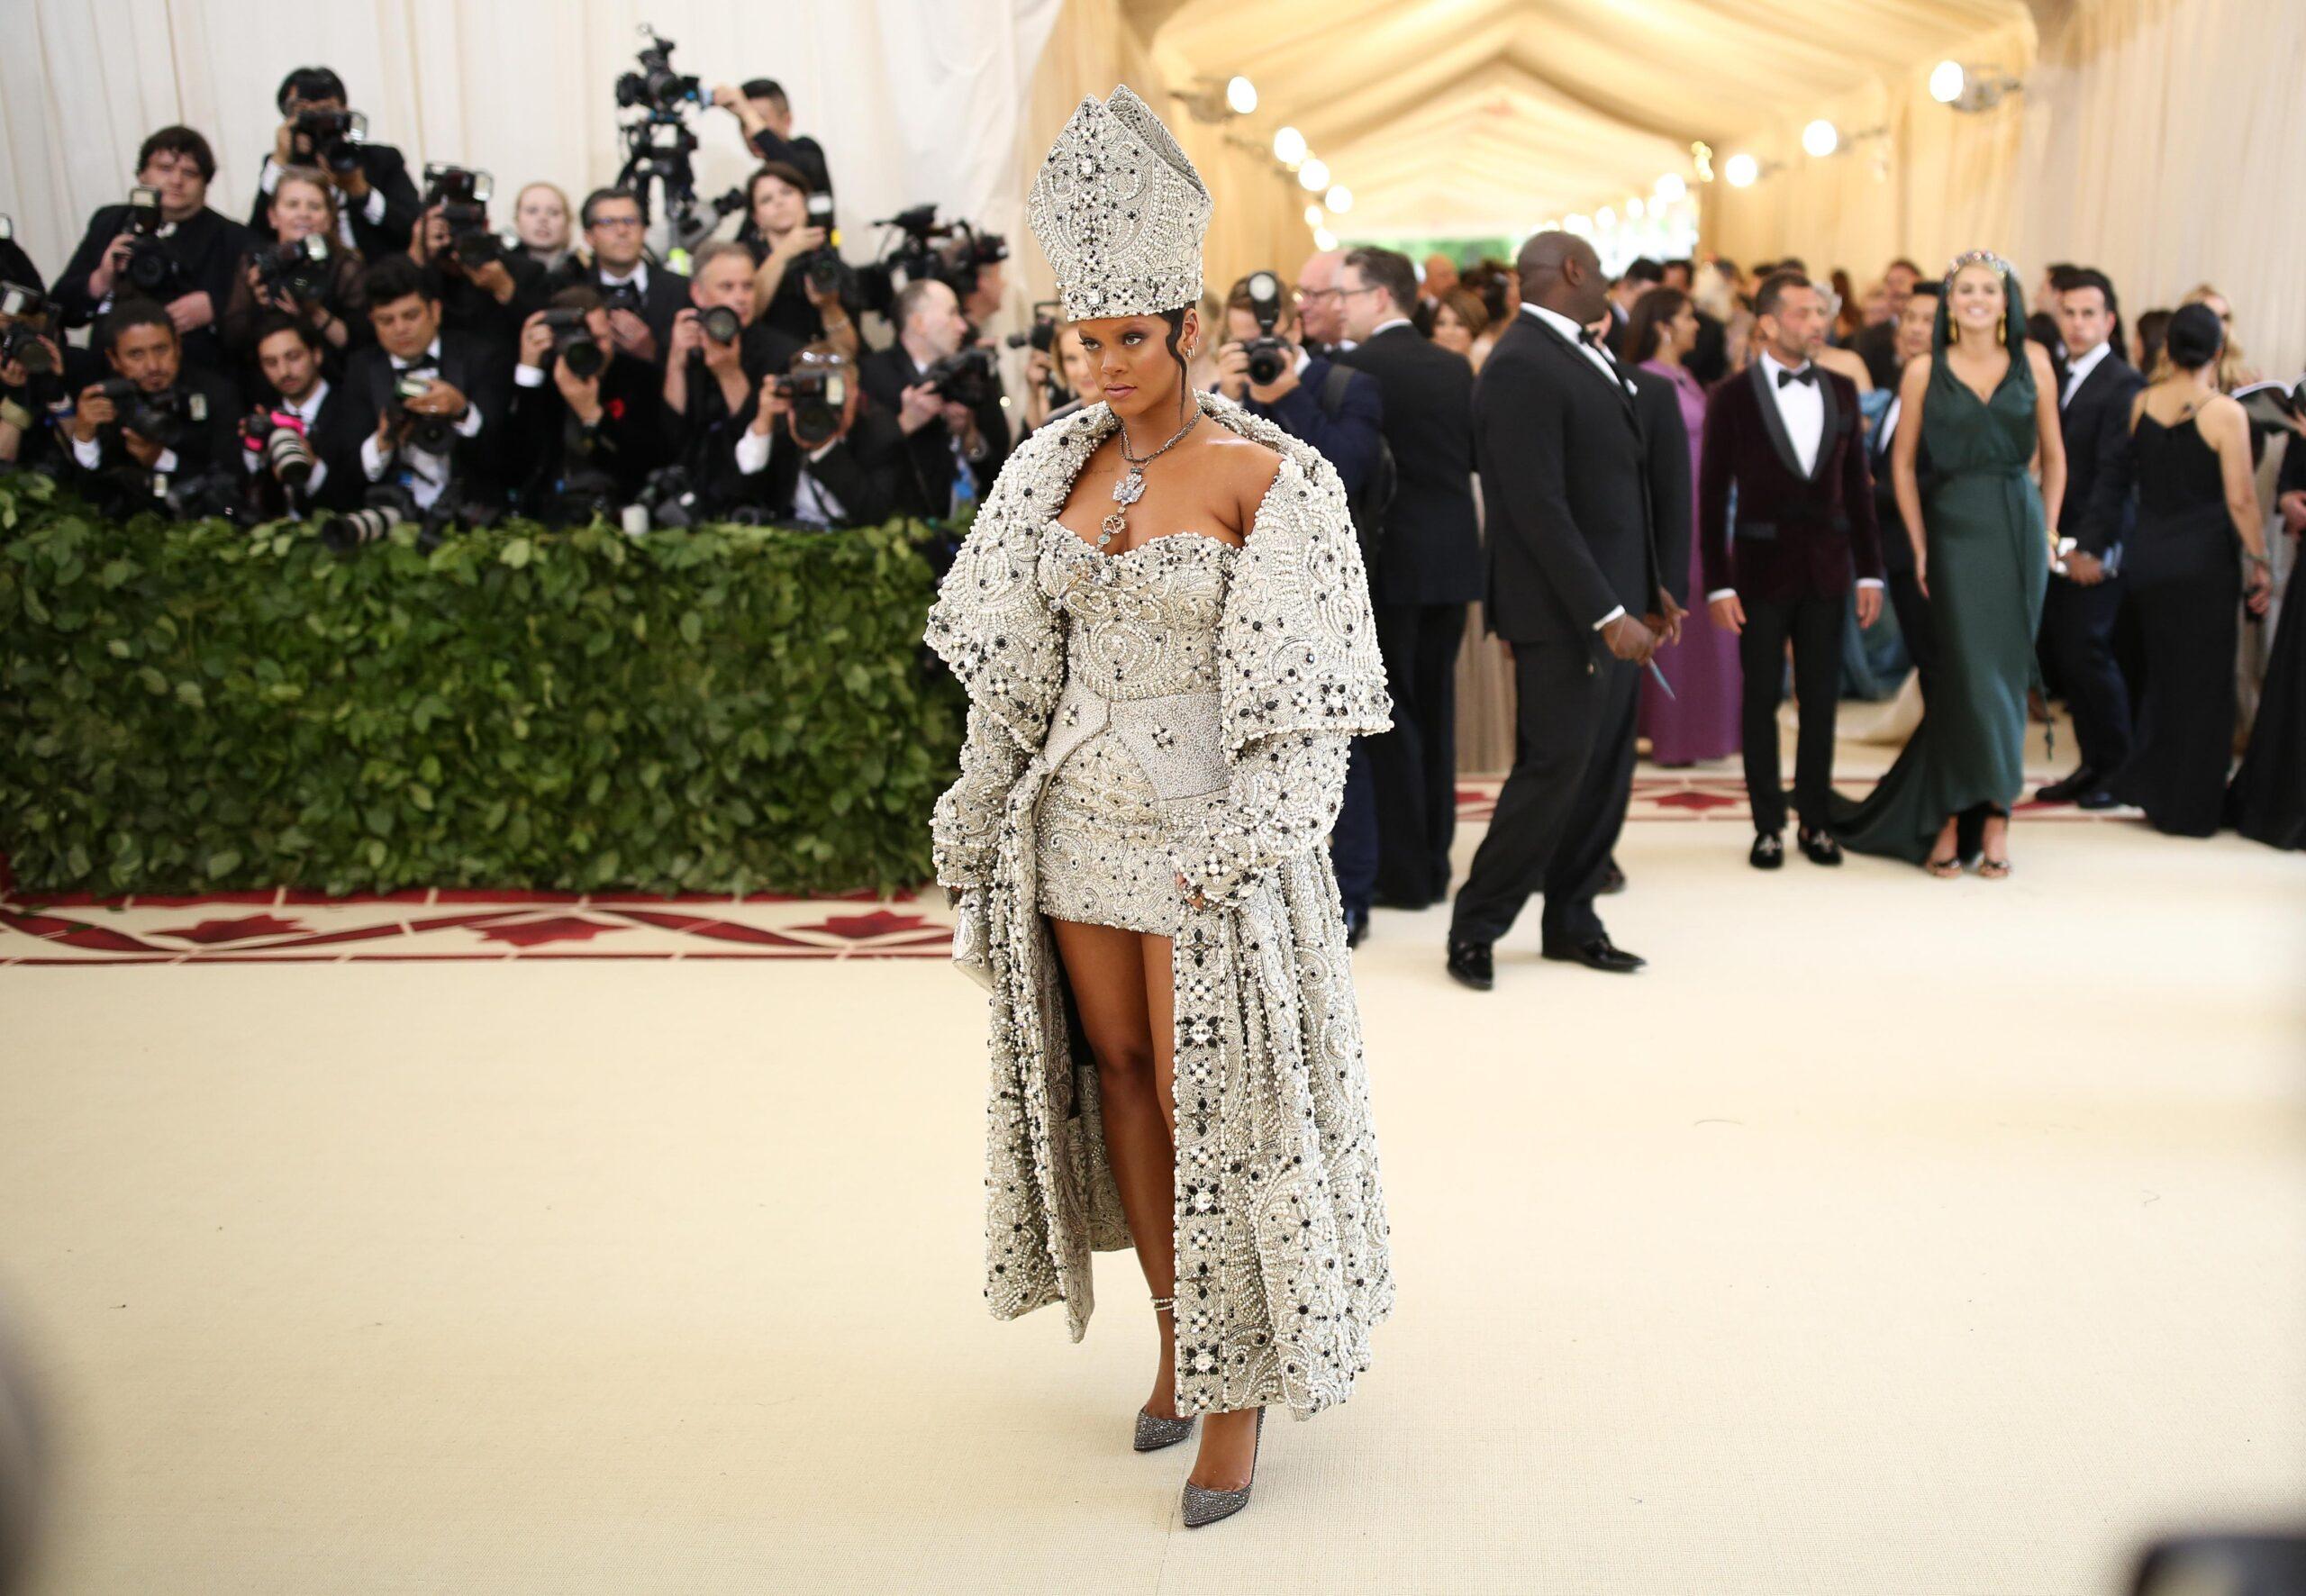 Rihanna at the Met Gala 2018